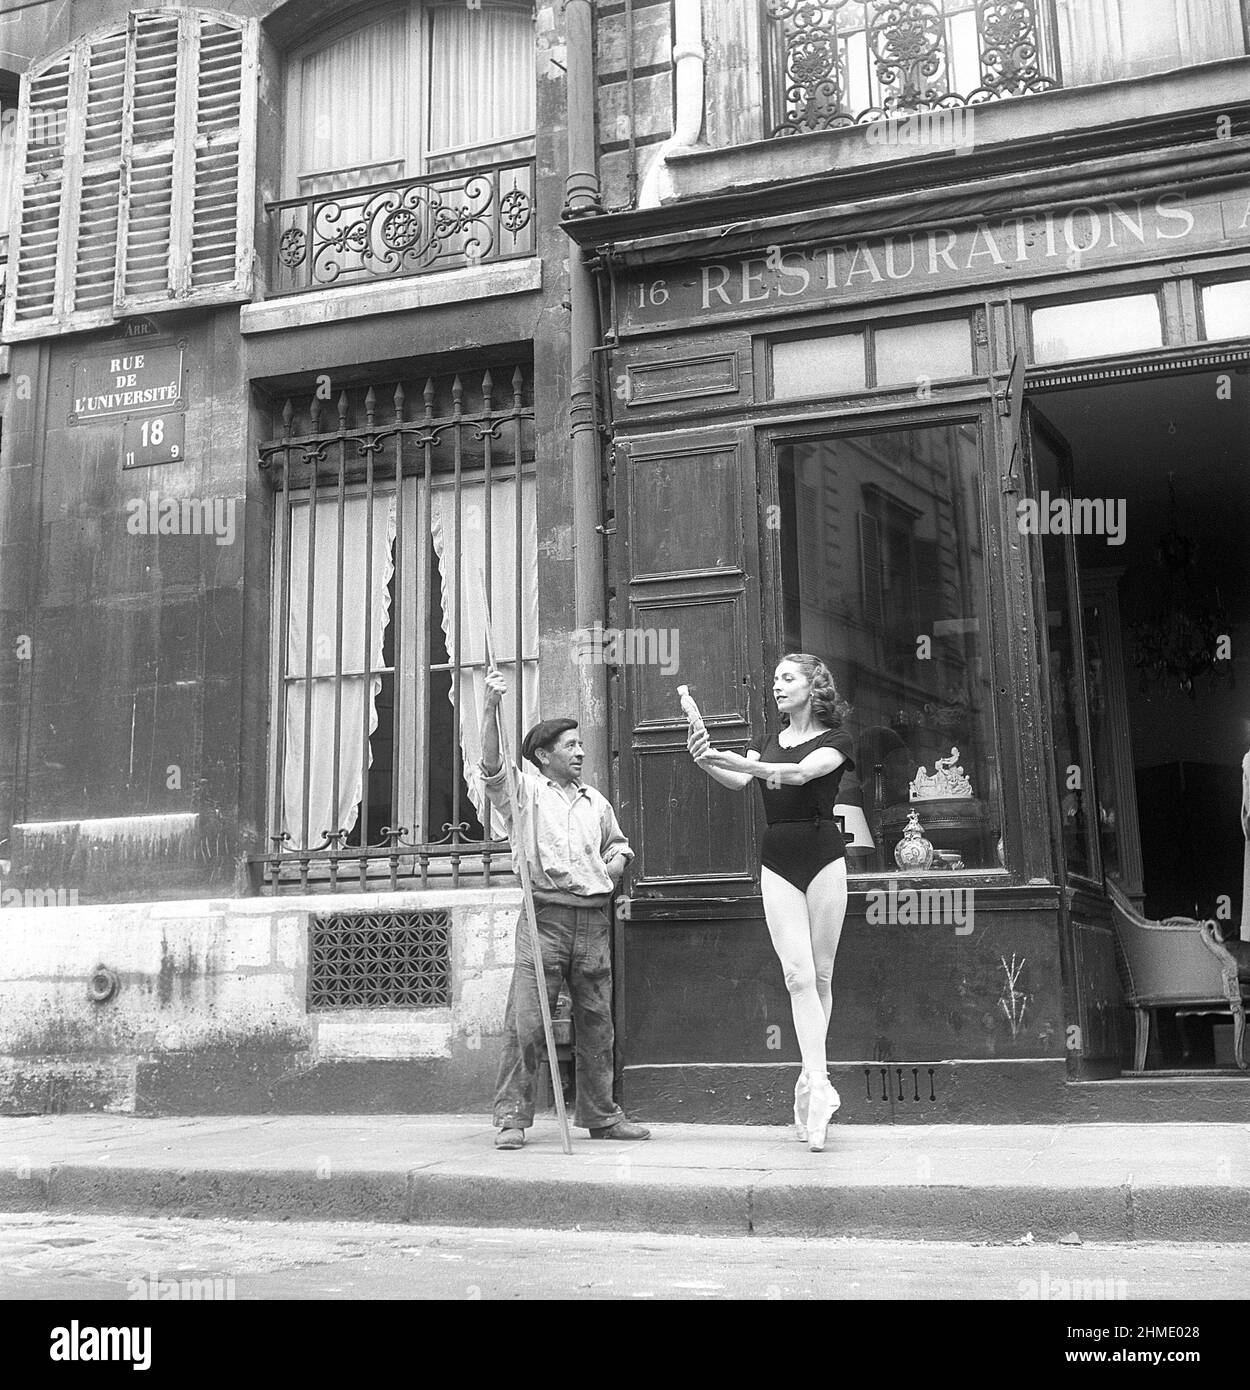 Danseuse de ballet en 1950s. Ellen Rasch, 1920-2015, danseuse suédoise et images d'actrice à Paris France debout sur ses orteils tenant un ancien à l'extérieur d'un magasin pendant qu'un nettoyeur de rue regarde, a suspendu son travail. 1951 photo Kristoffersson réf. BD26-5 Banque D'Images